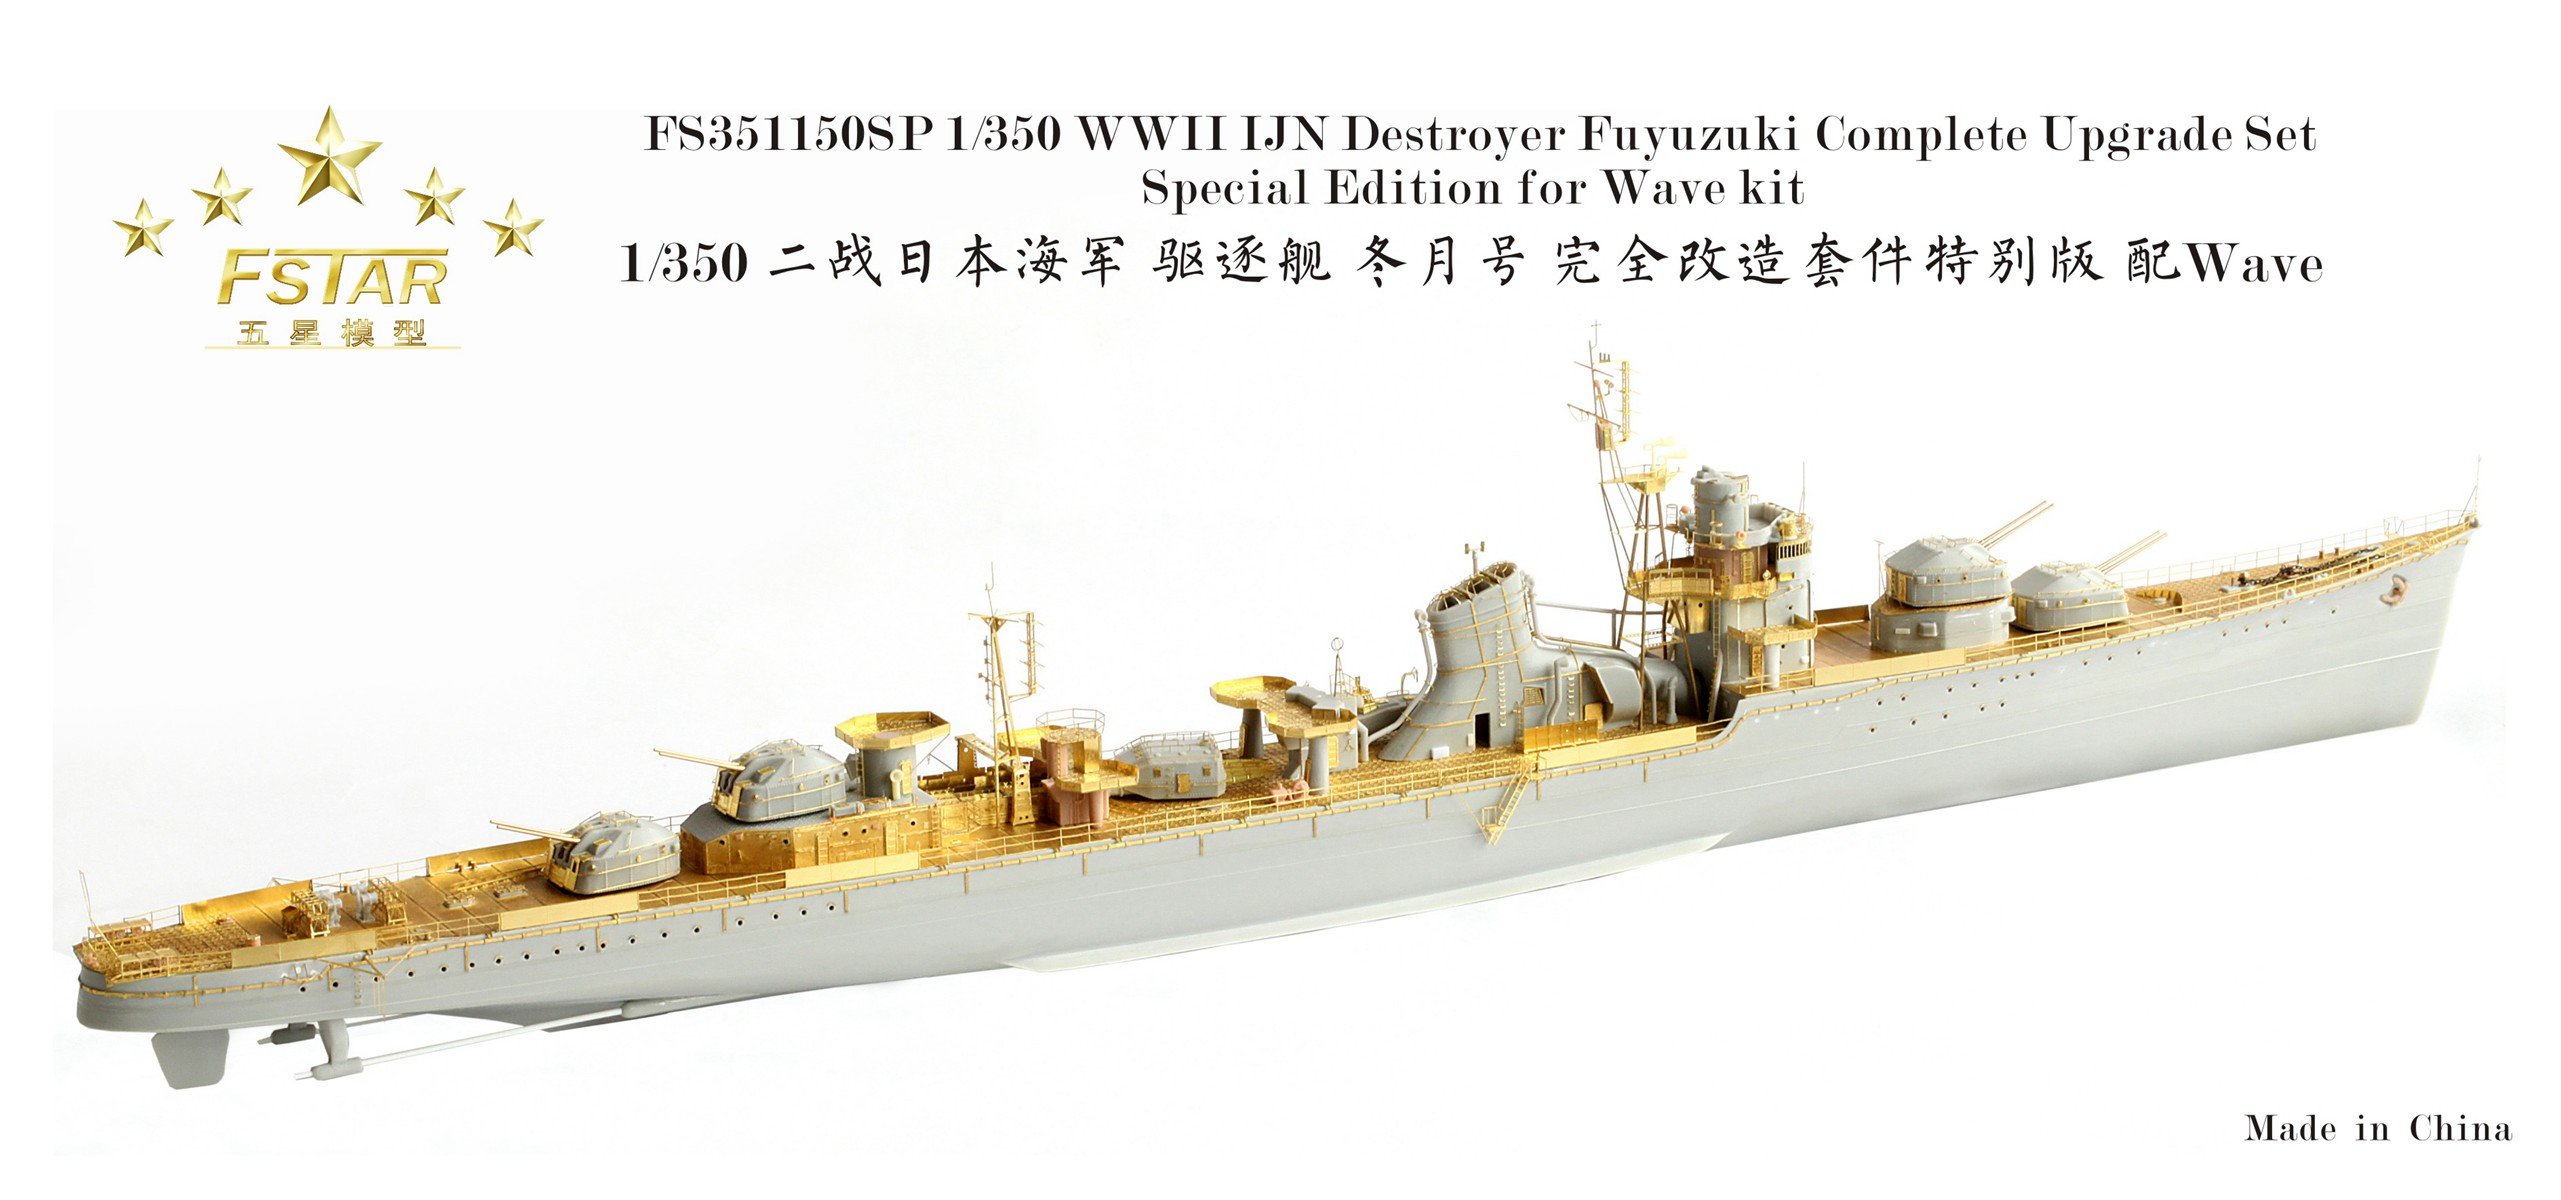 1/350 二战日本海军冬月号驱逐舰完全改造套件特别版(配Wave)